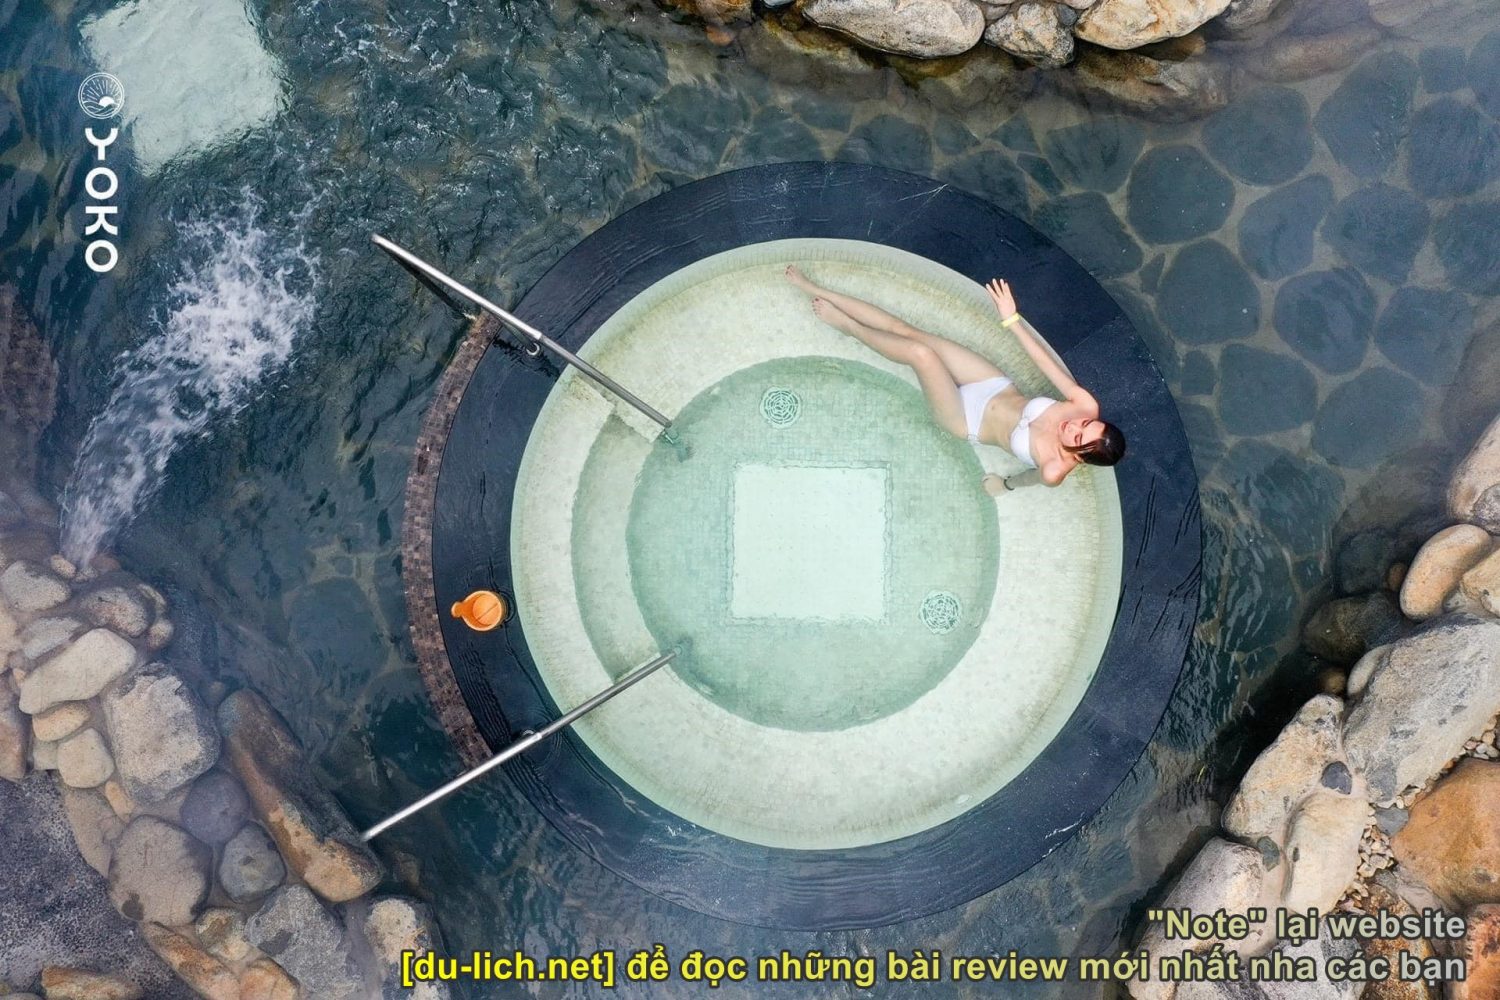 Những địa điểm tắm khoáng cao cấp gần Hà Nội